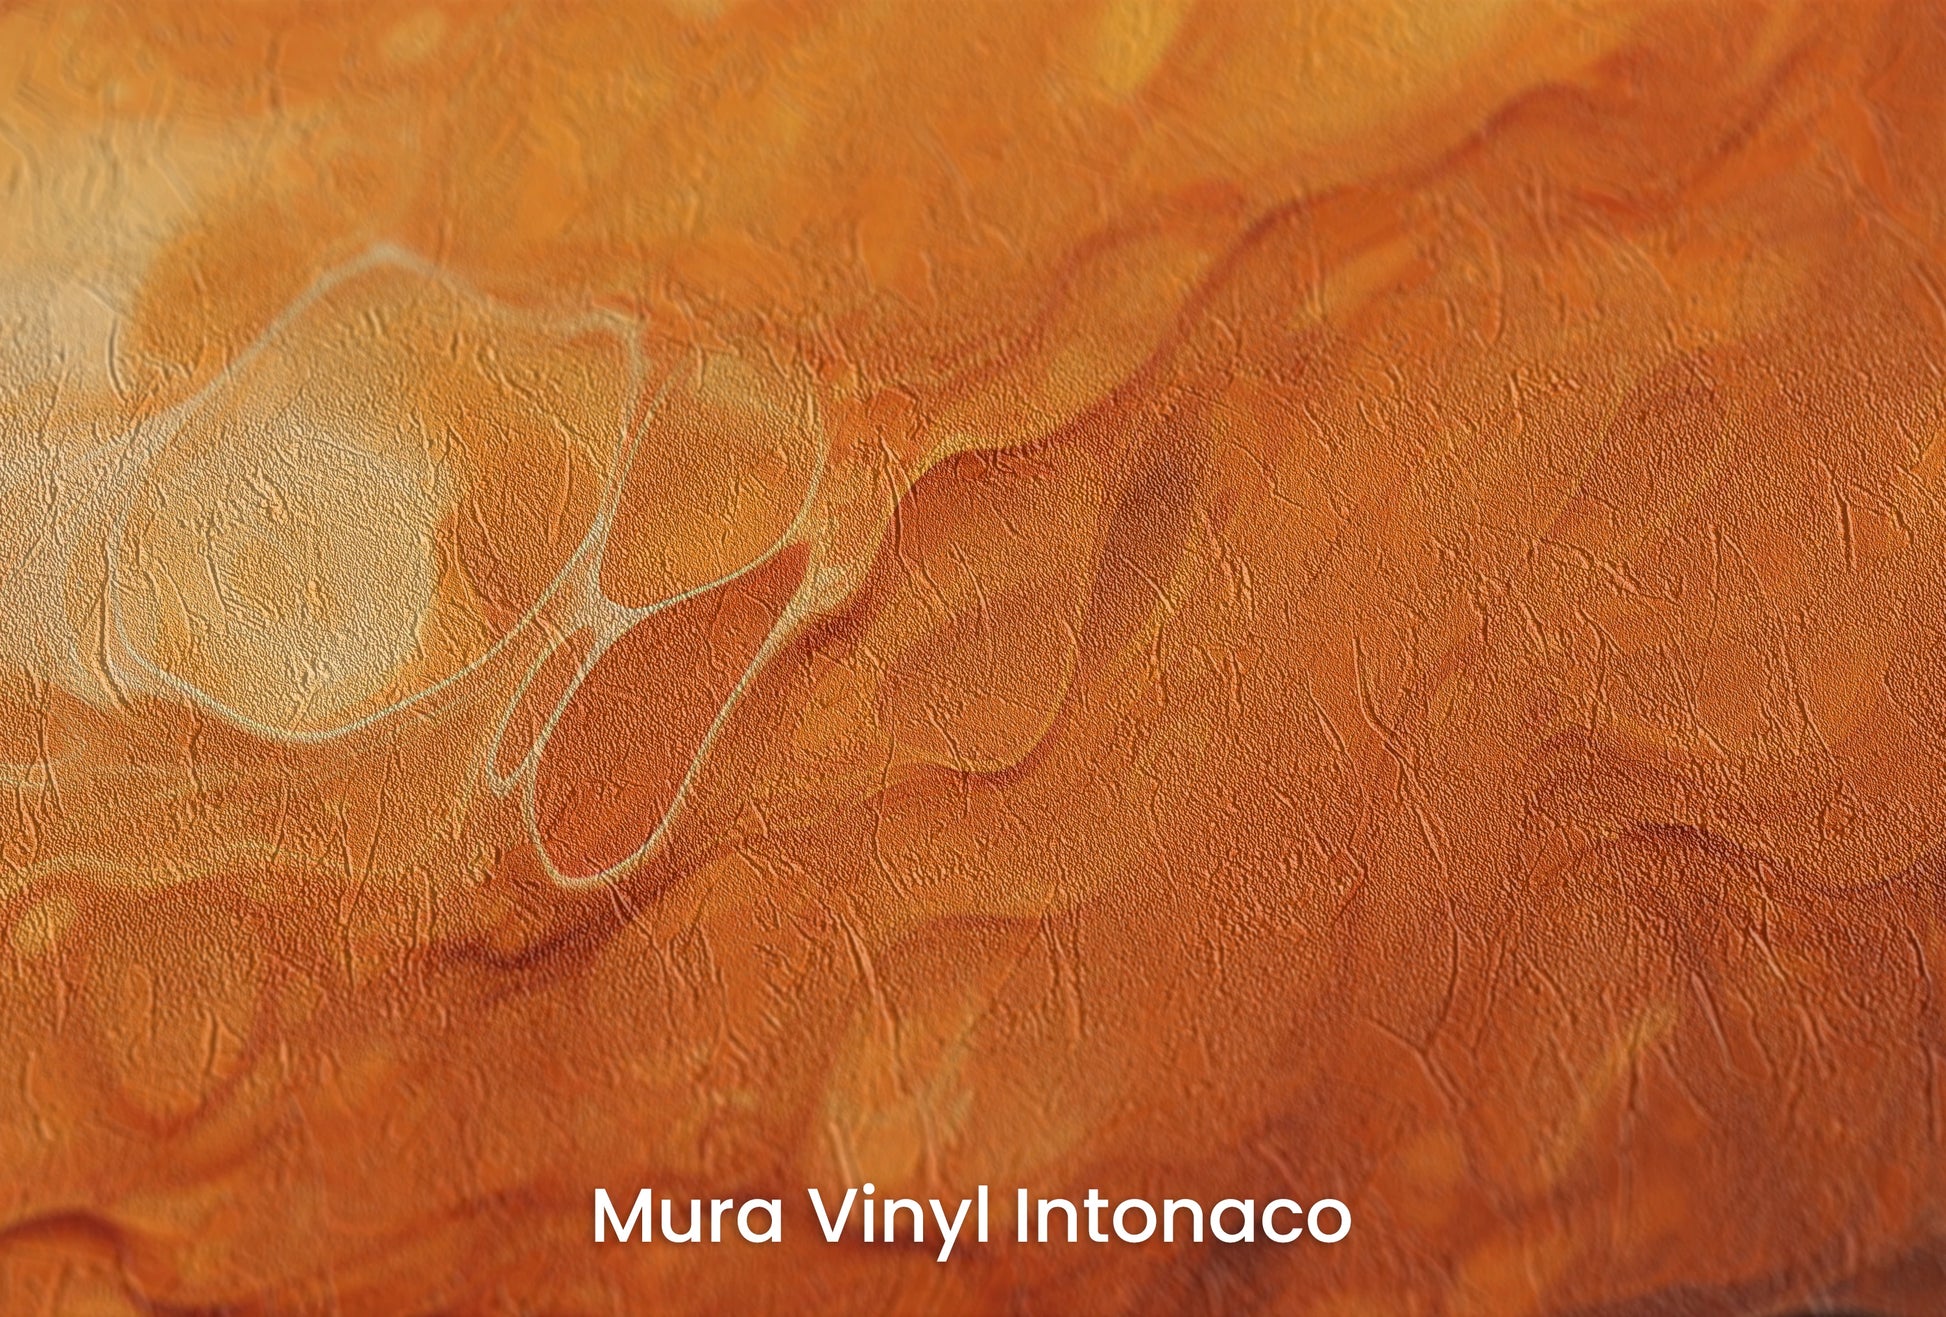 Zbliżenie na artystyczną fototapetę o nazwie Mercurial Craters na podłożu Mura Vinyl Intonaco - struktura tartego tynku.